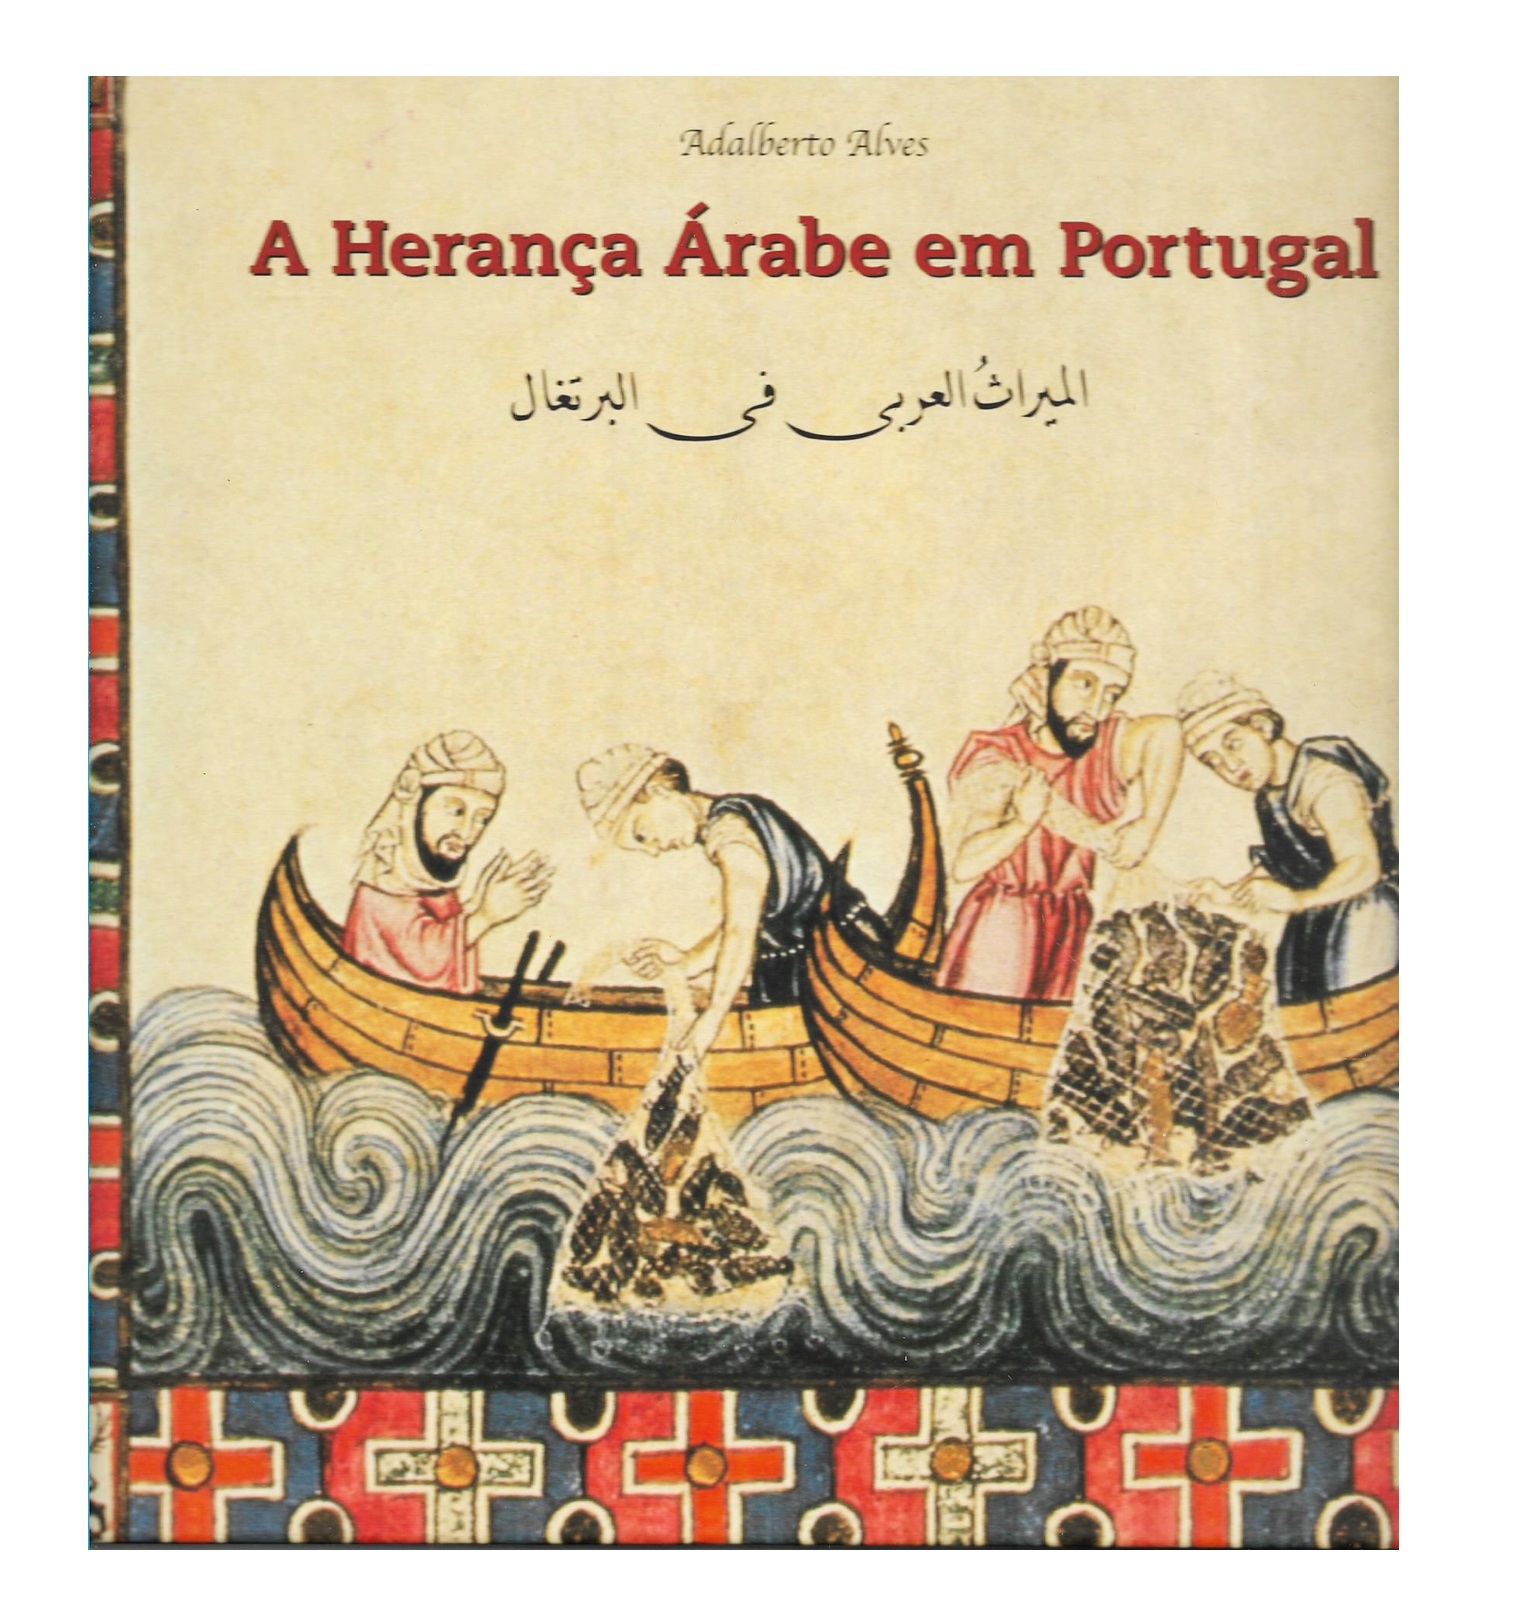 A HERANÇA ÁRABE EM PORTUGAL